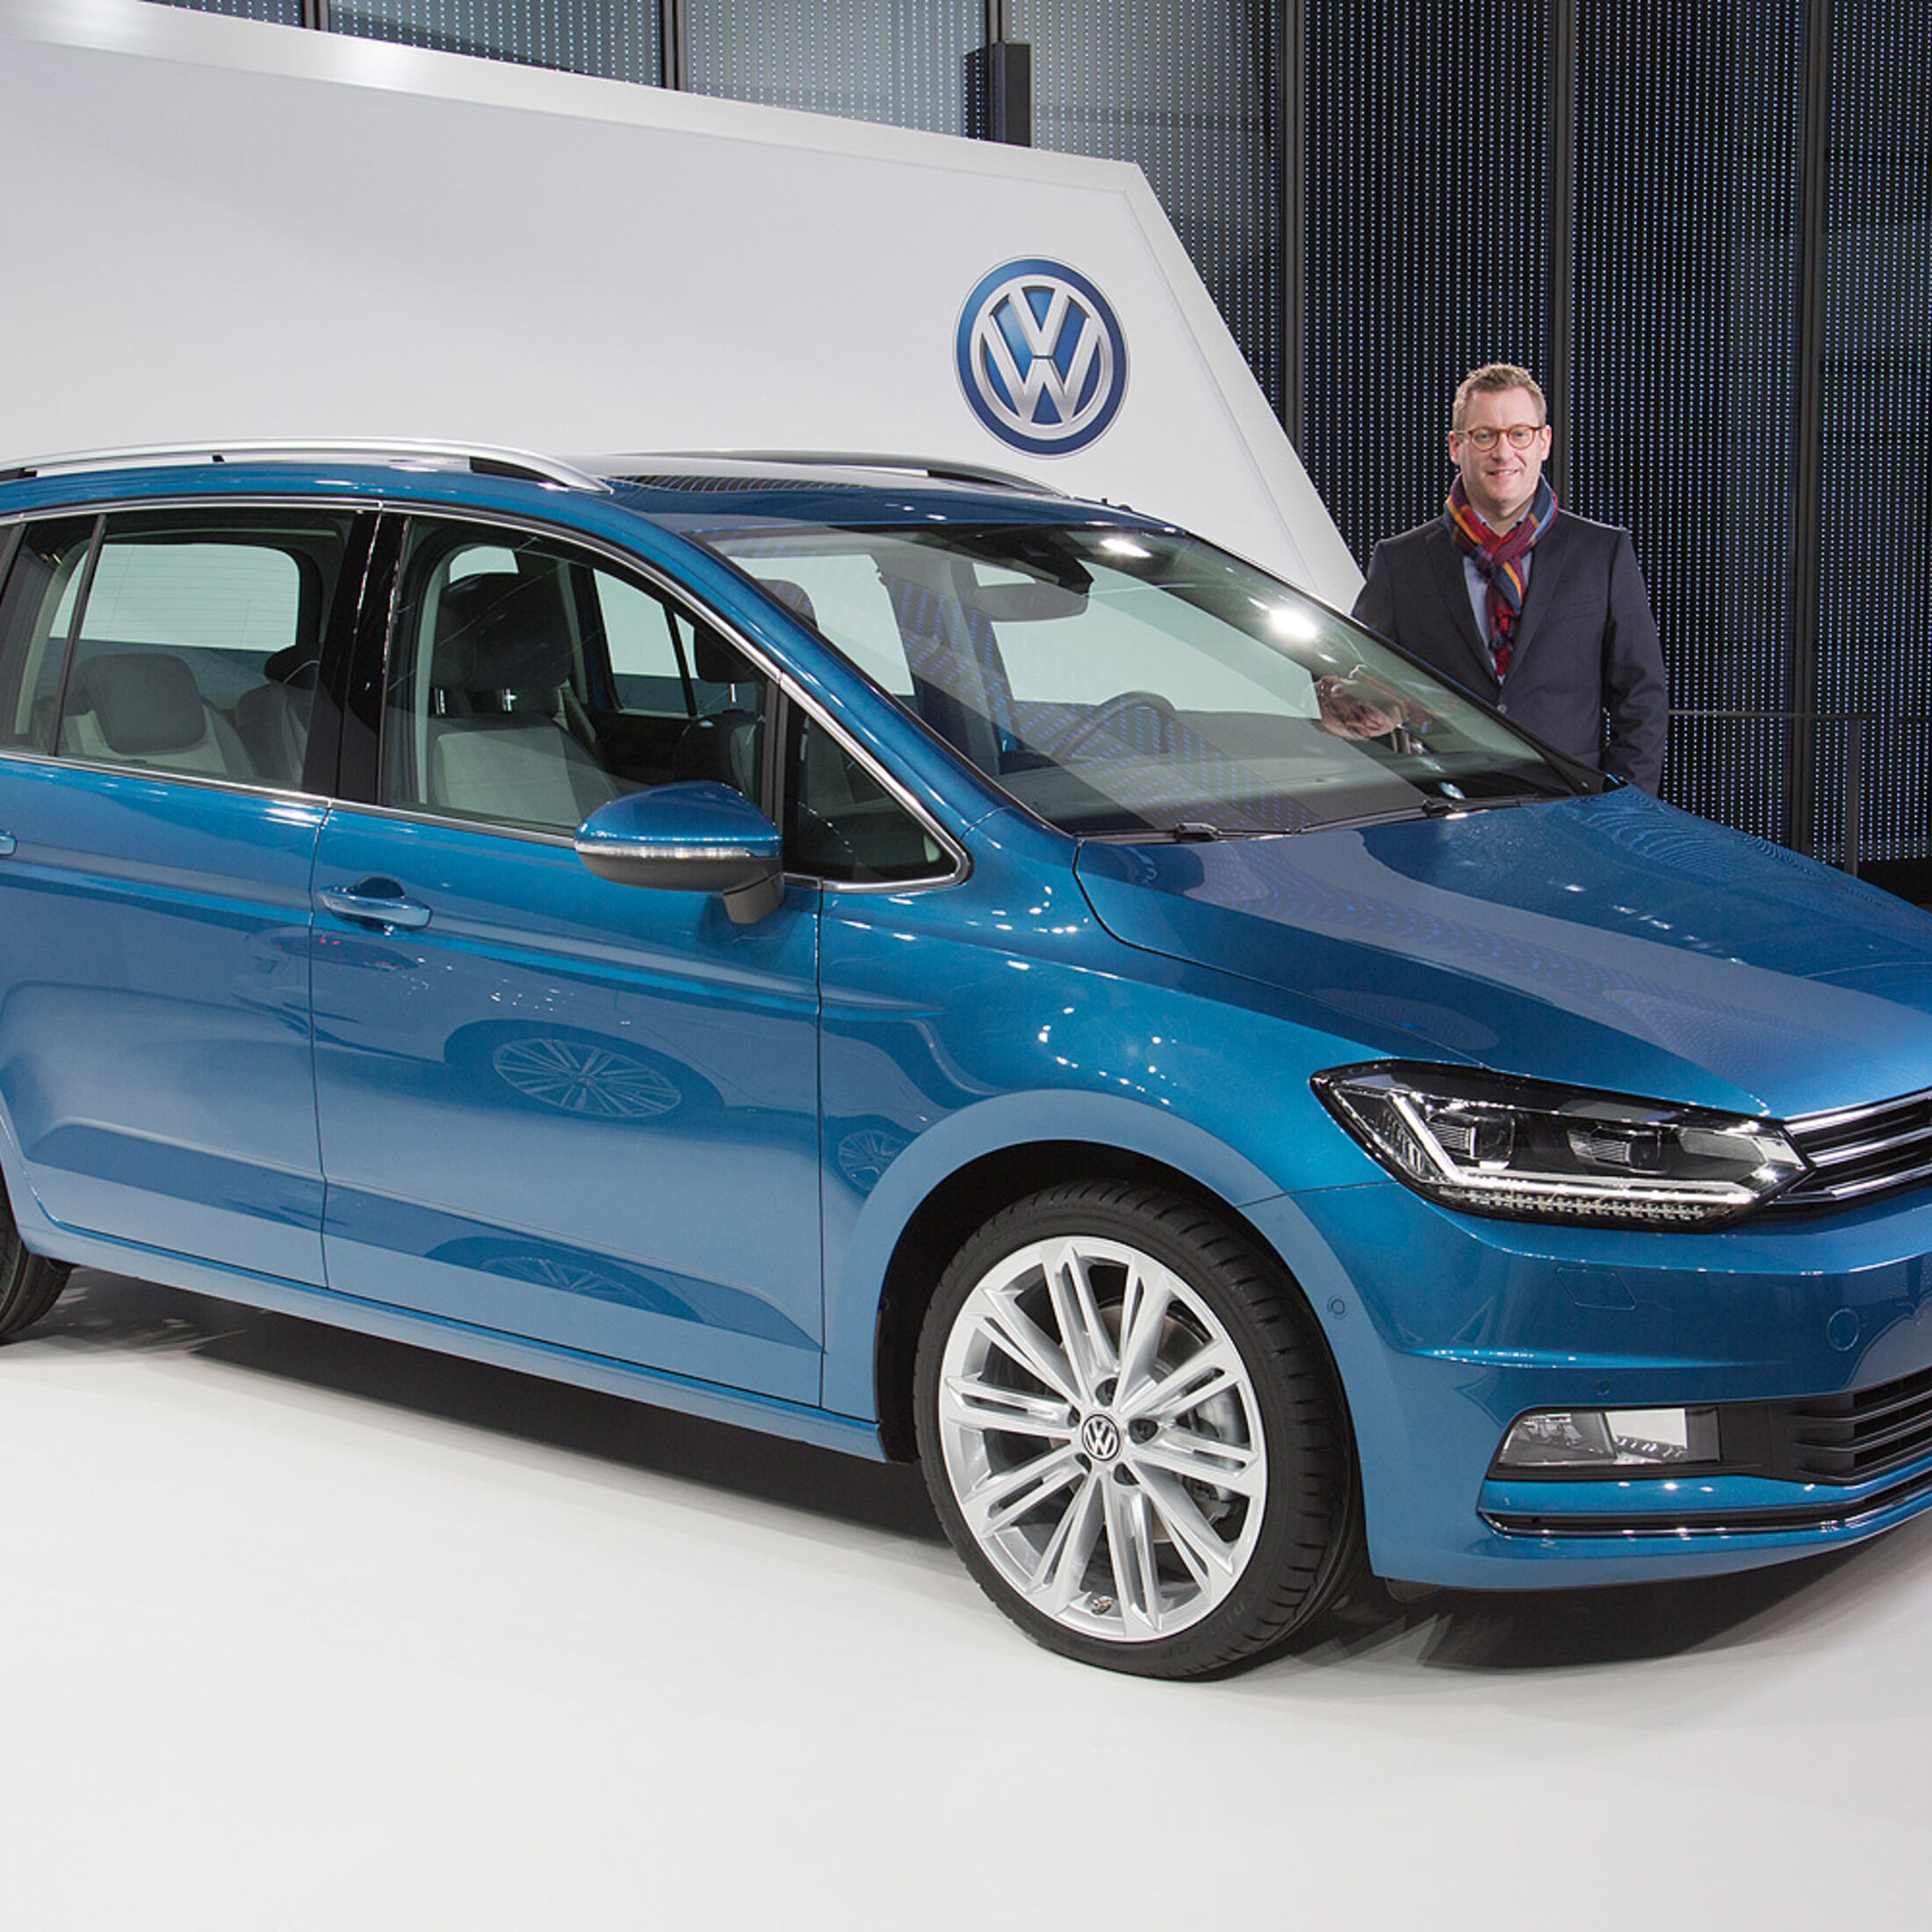 Neuer VW Touran 2015: Renovierter Kompaktvan ab 23.350 Euro